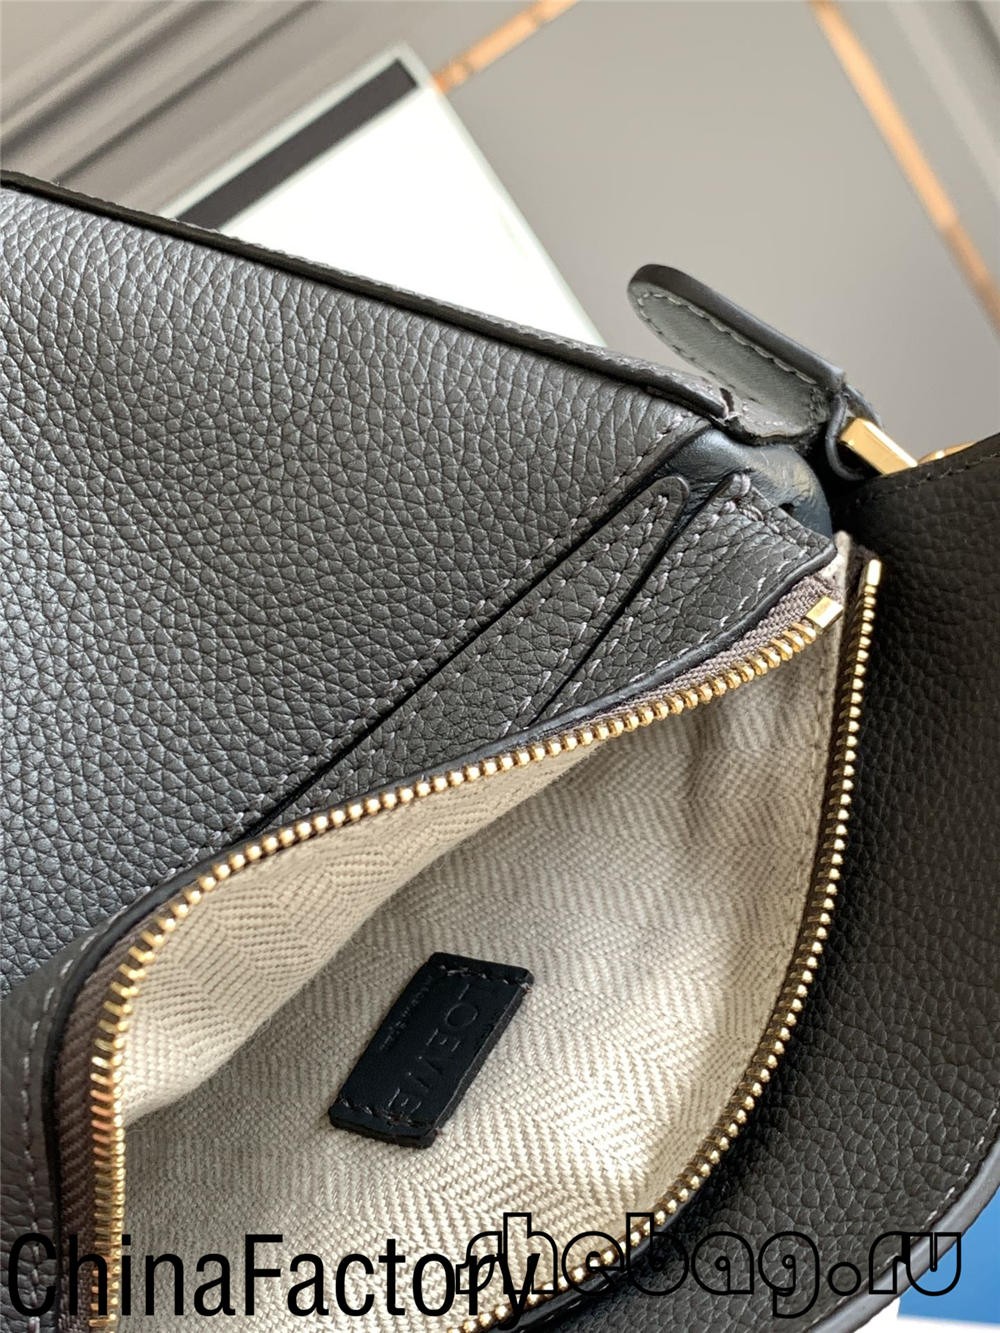 Đánh giá bản sao túi Loewe tốt nhất: Loewe Cubi (cập nhật 2022) - Chất lượng tốt nhất Túi Louis Vuitton giả trên Cửa hàng trực tuyến, Túi thiết kế bản sao ru